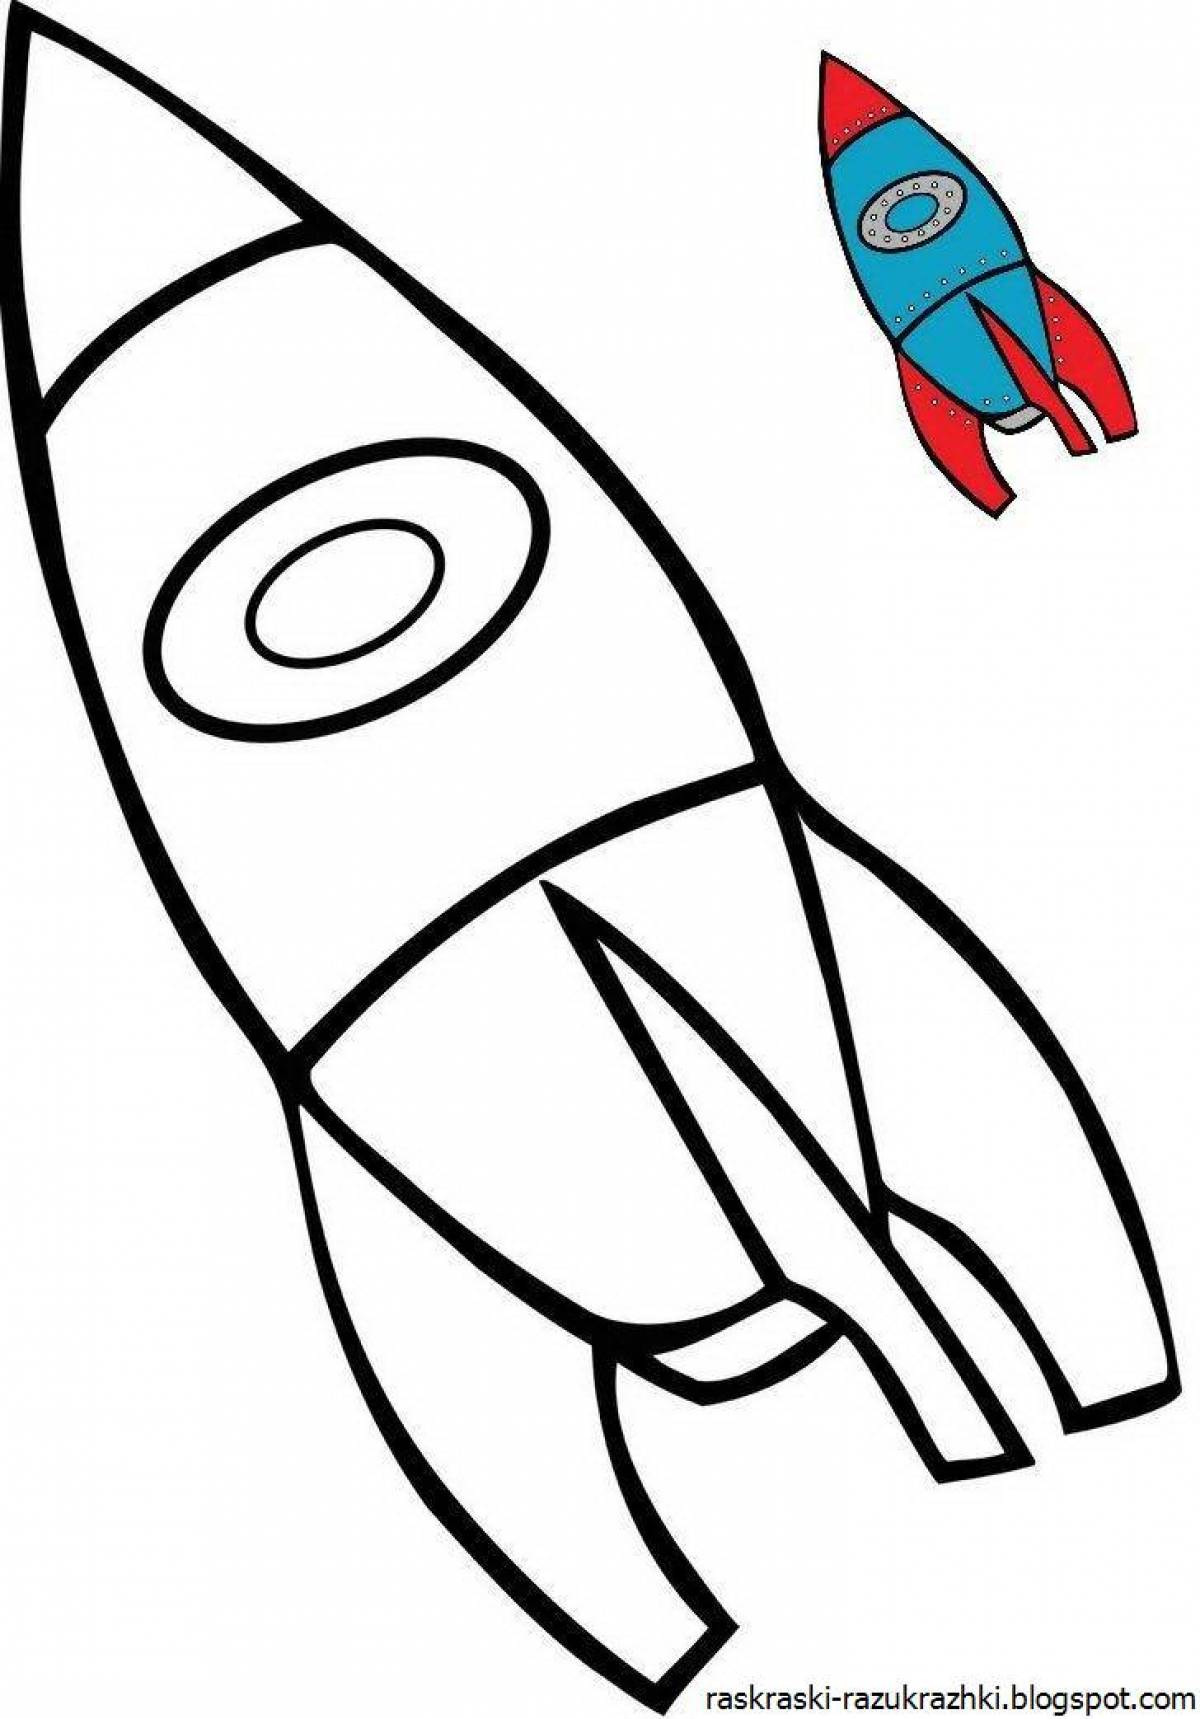 Fantastic rocket coloring book for kids